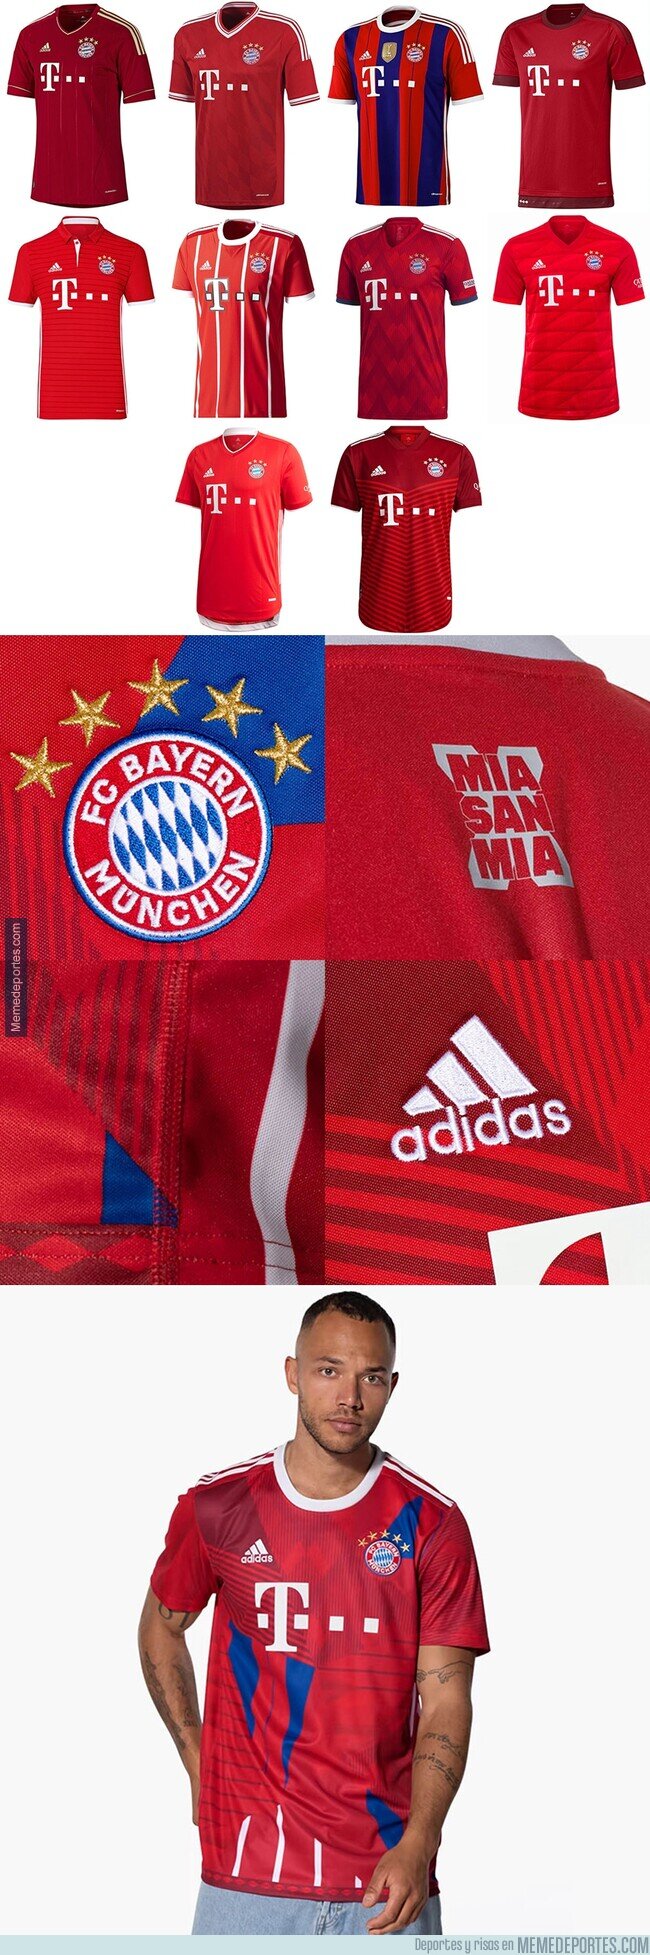 1163895 - El Bayern homenajea los 10 títulos conseguidos uniendo sus camisetas en una sola